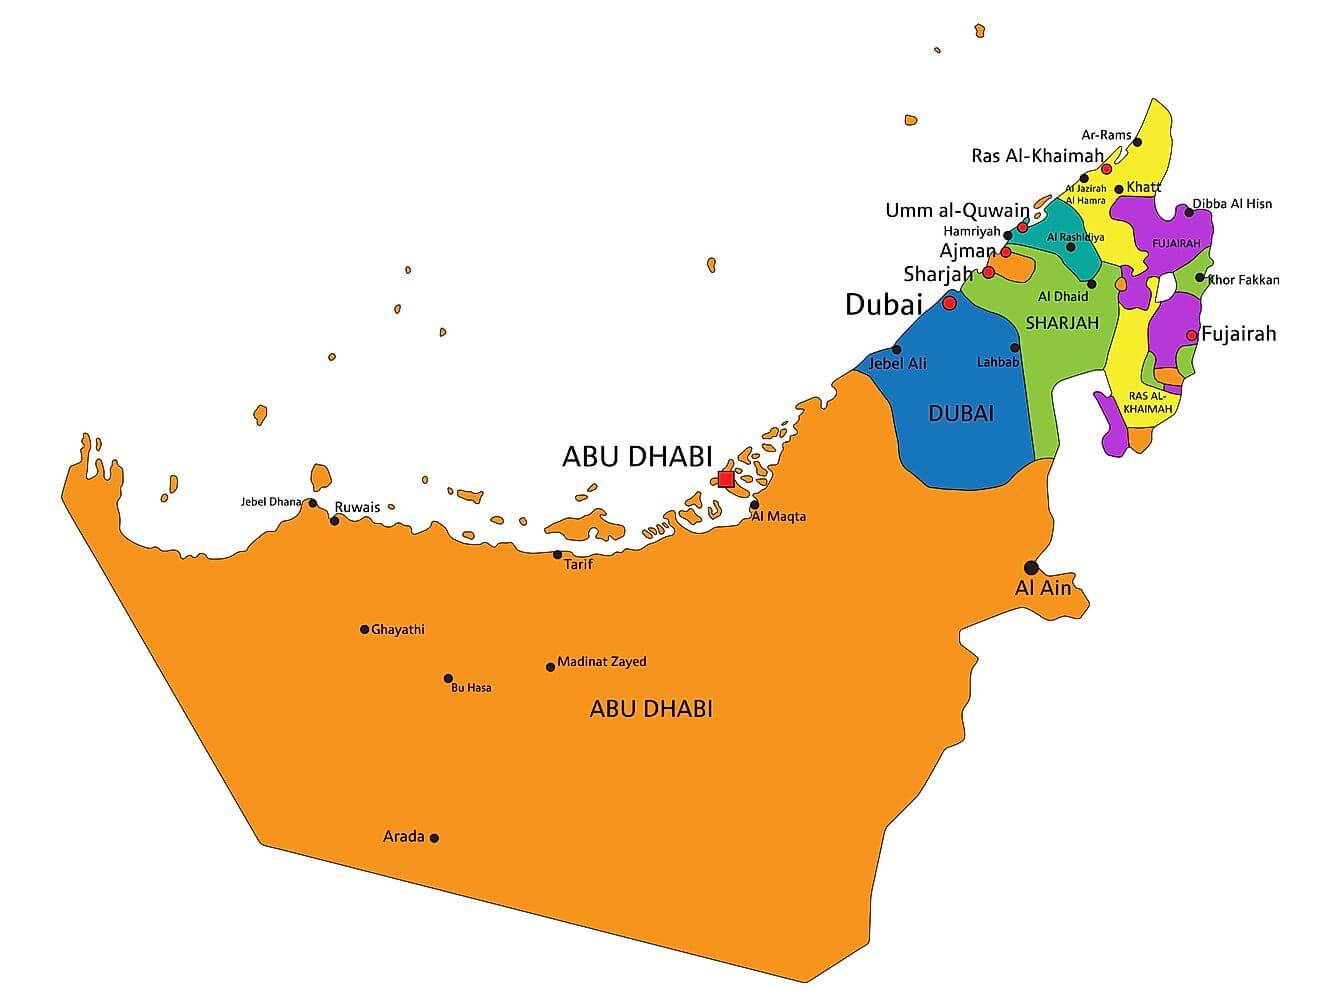 Bản đồ Emirates của Các Tiểu vương quốc Ả Rập Thống nhất